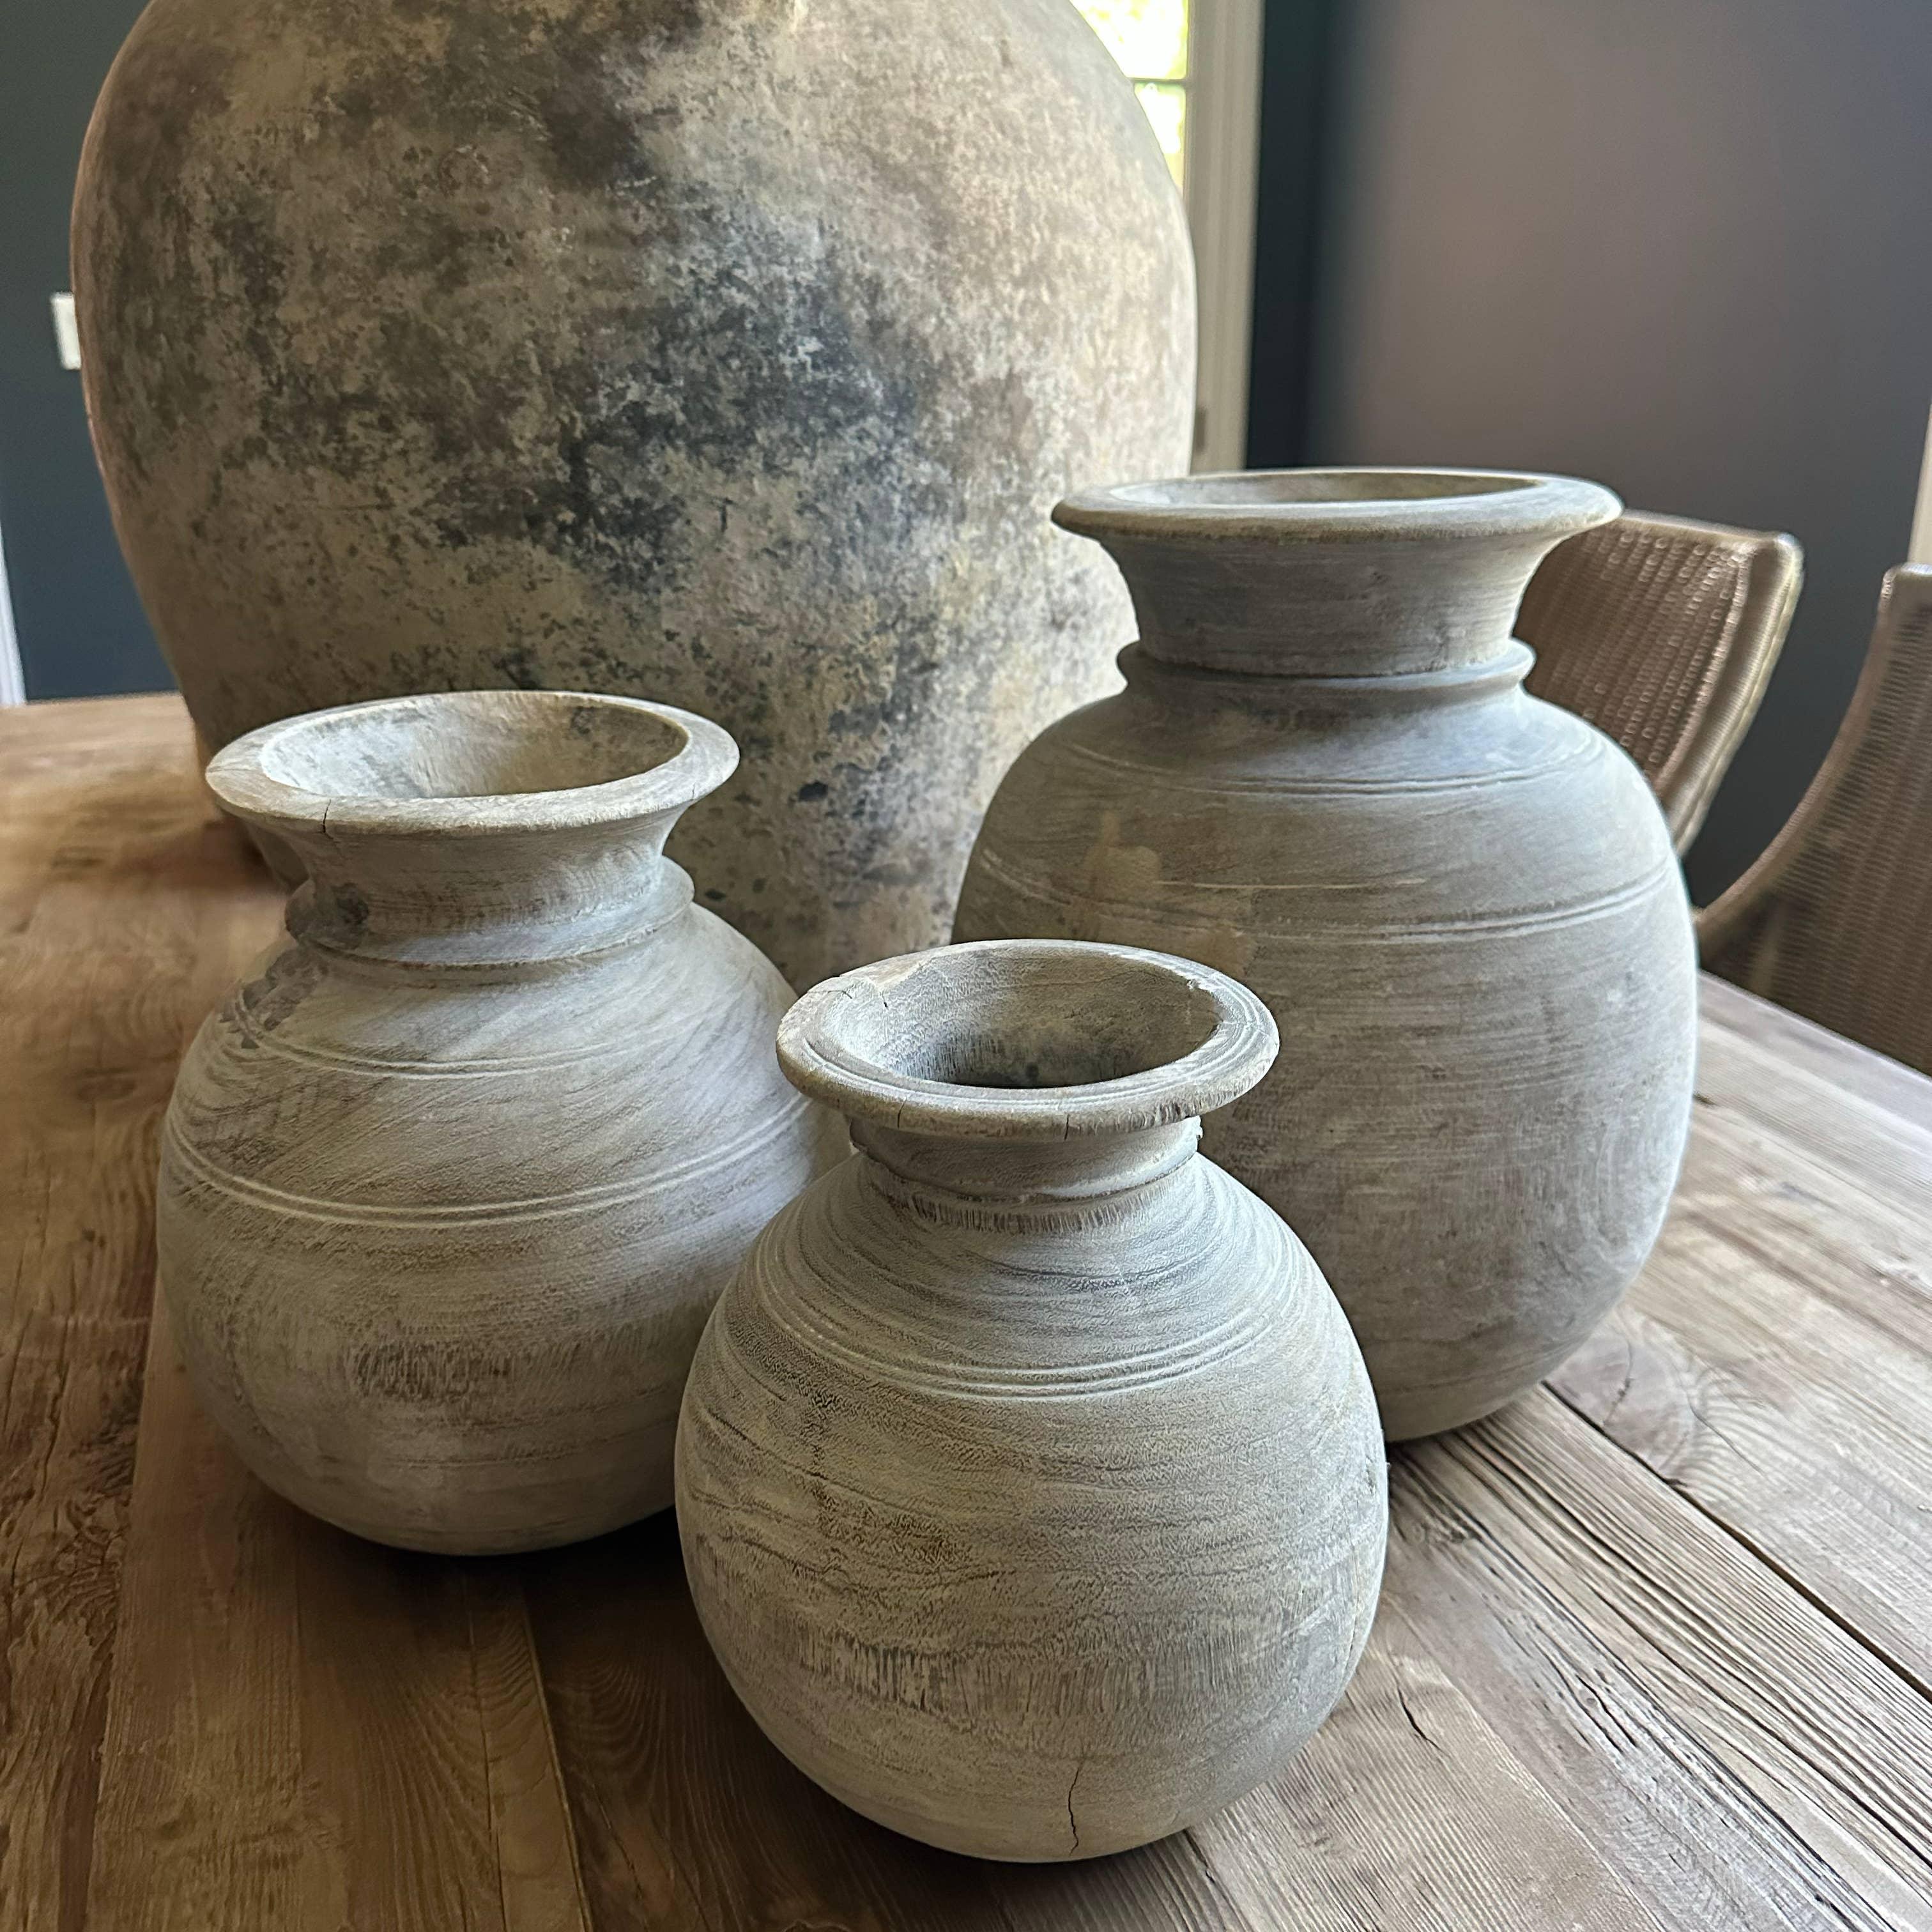 Antique Neutral Wooden Vase: Medium - Signastyle Boutique